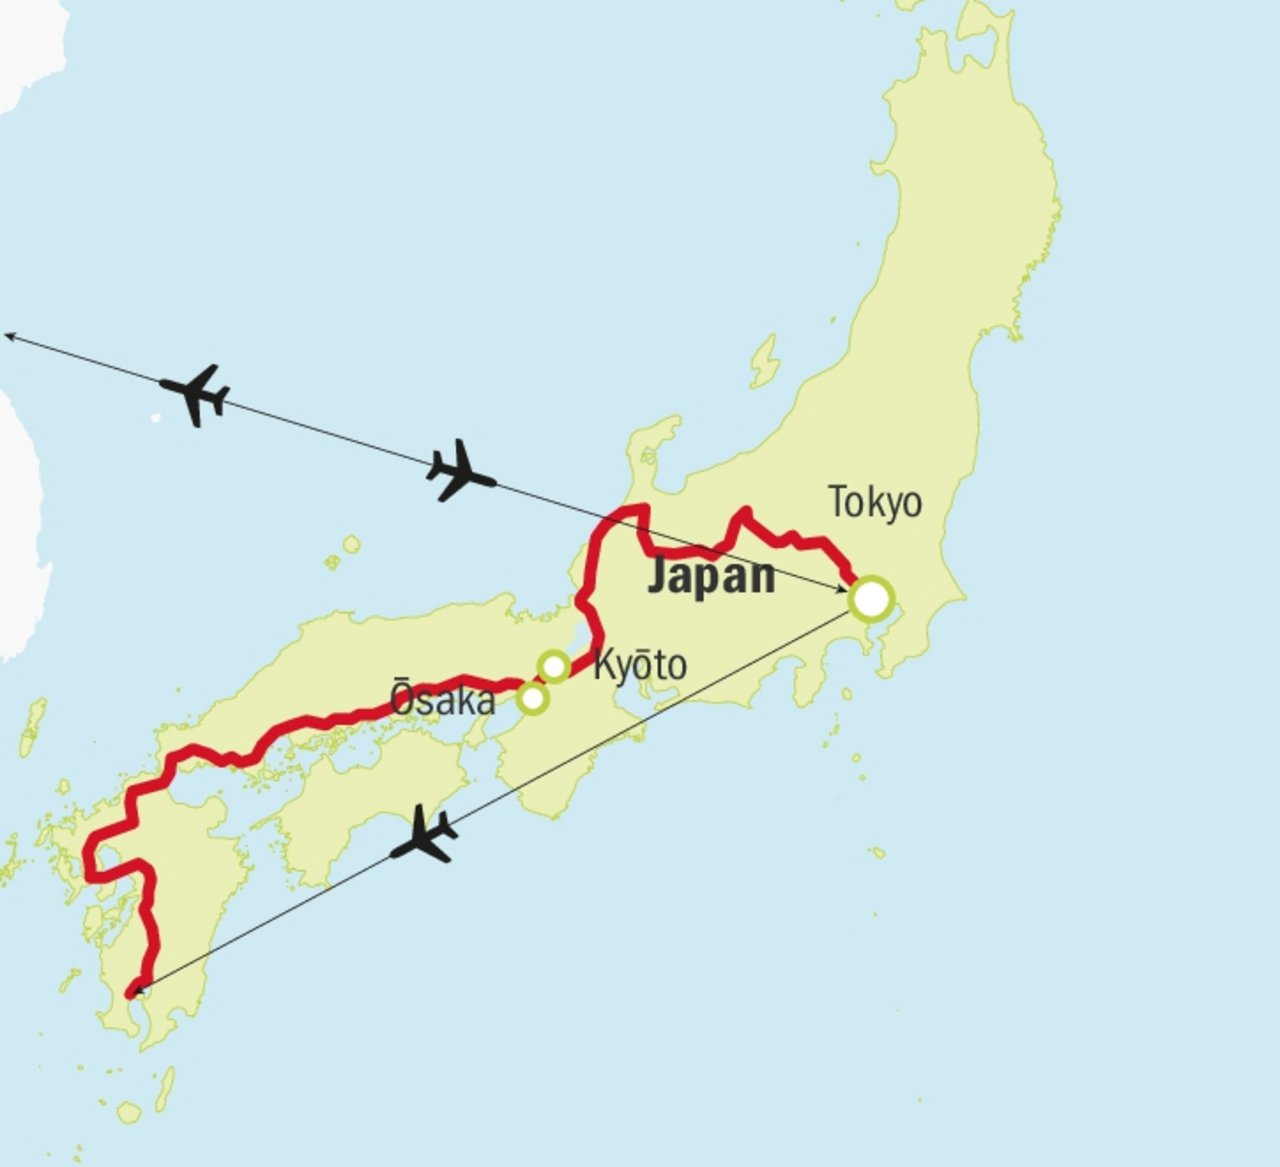 Die Reise erfolgte mit Flugzeug, Car, Fähre und hauptsächlich mit dem Hochgeschwindigkeitszug Shinkansen. (Grafik zVg)